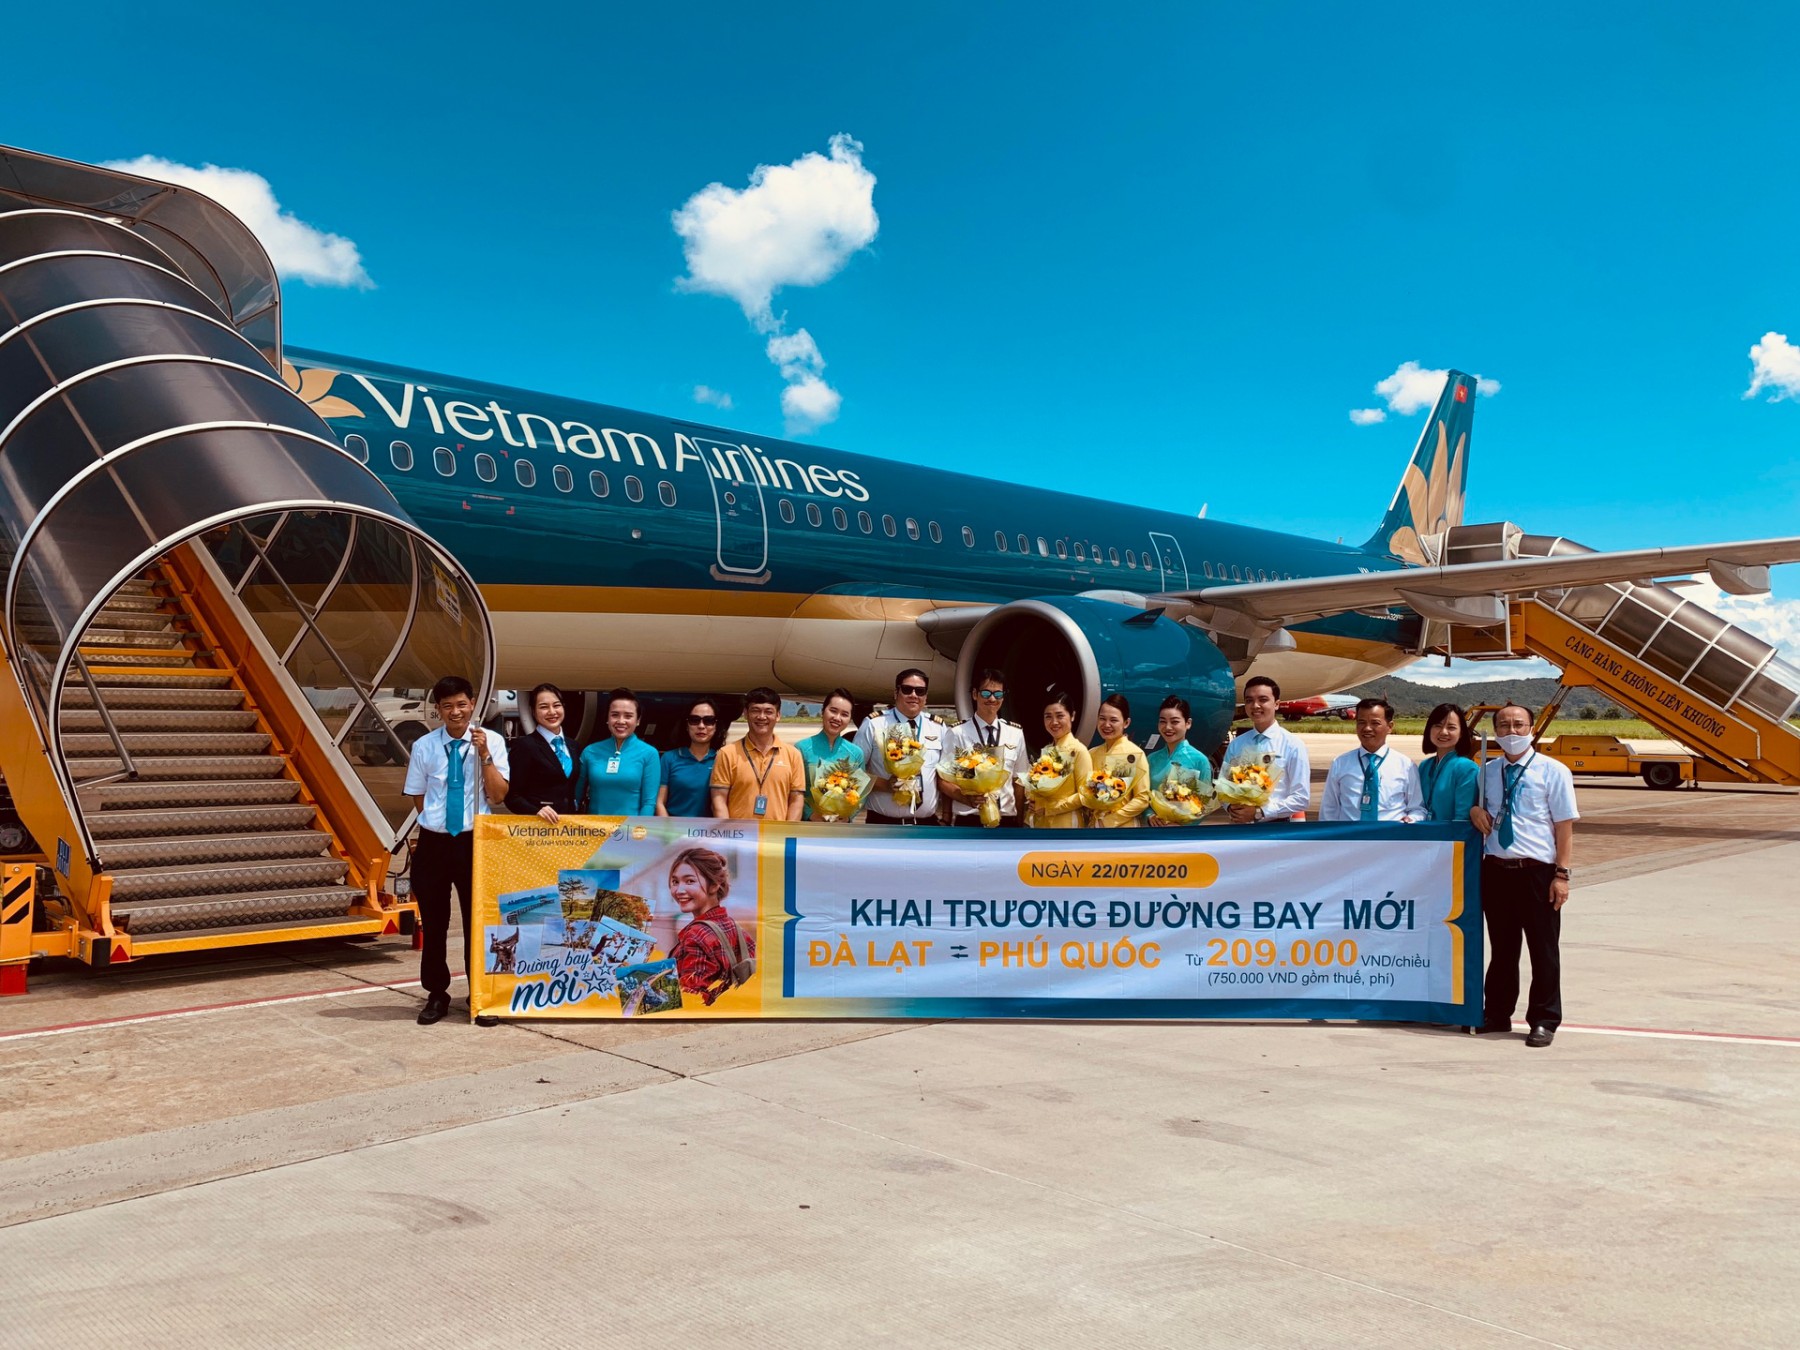 Vietnam Airlines đang khai thác đường bay Hải Phòng - Điện Biên với tần suất 4 chuyến khứ hồi/tuần vào các ngày thứ 2, 4, 6, Chủ nhật. Đường bay Đà Lạt - Phú Quốc được khai thác 3 chuyến khứ hồi/tuần vào các ngày thứ 4, 6, Chủ nhật. 